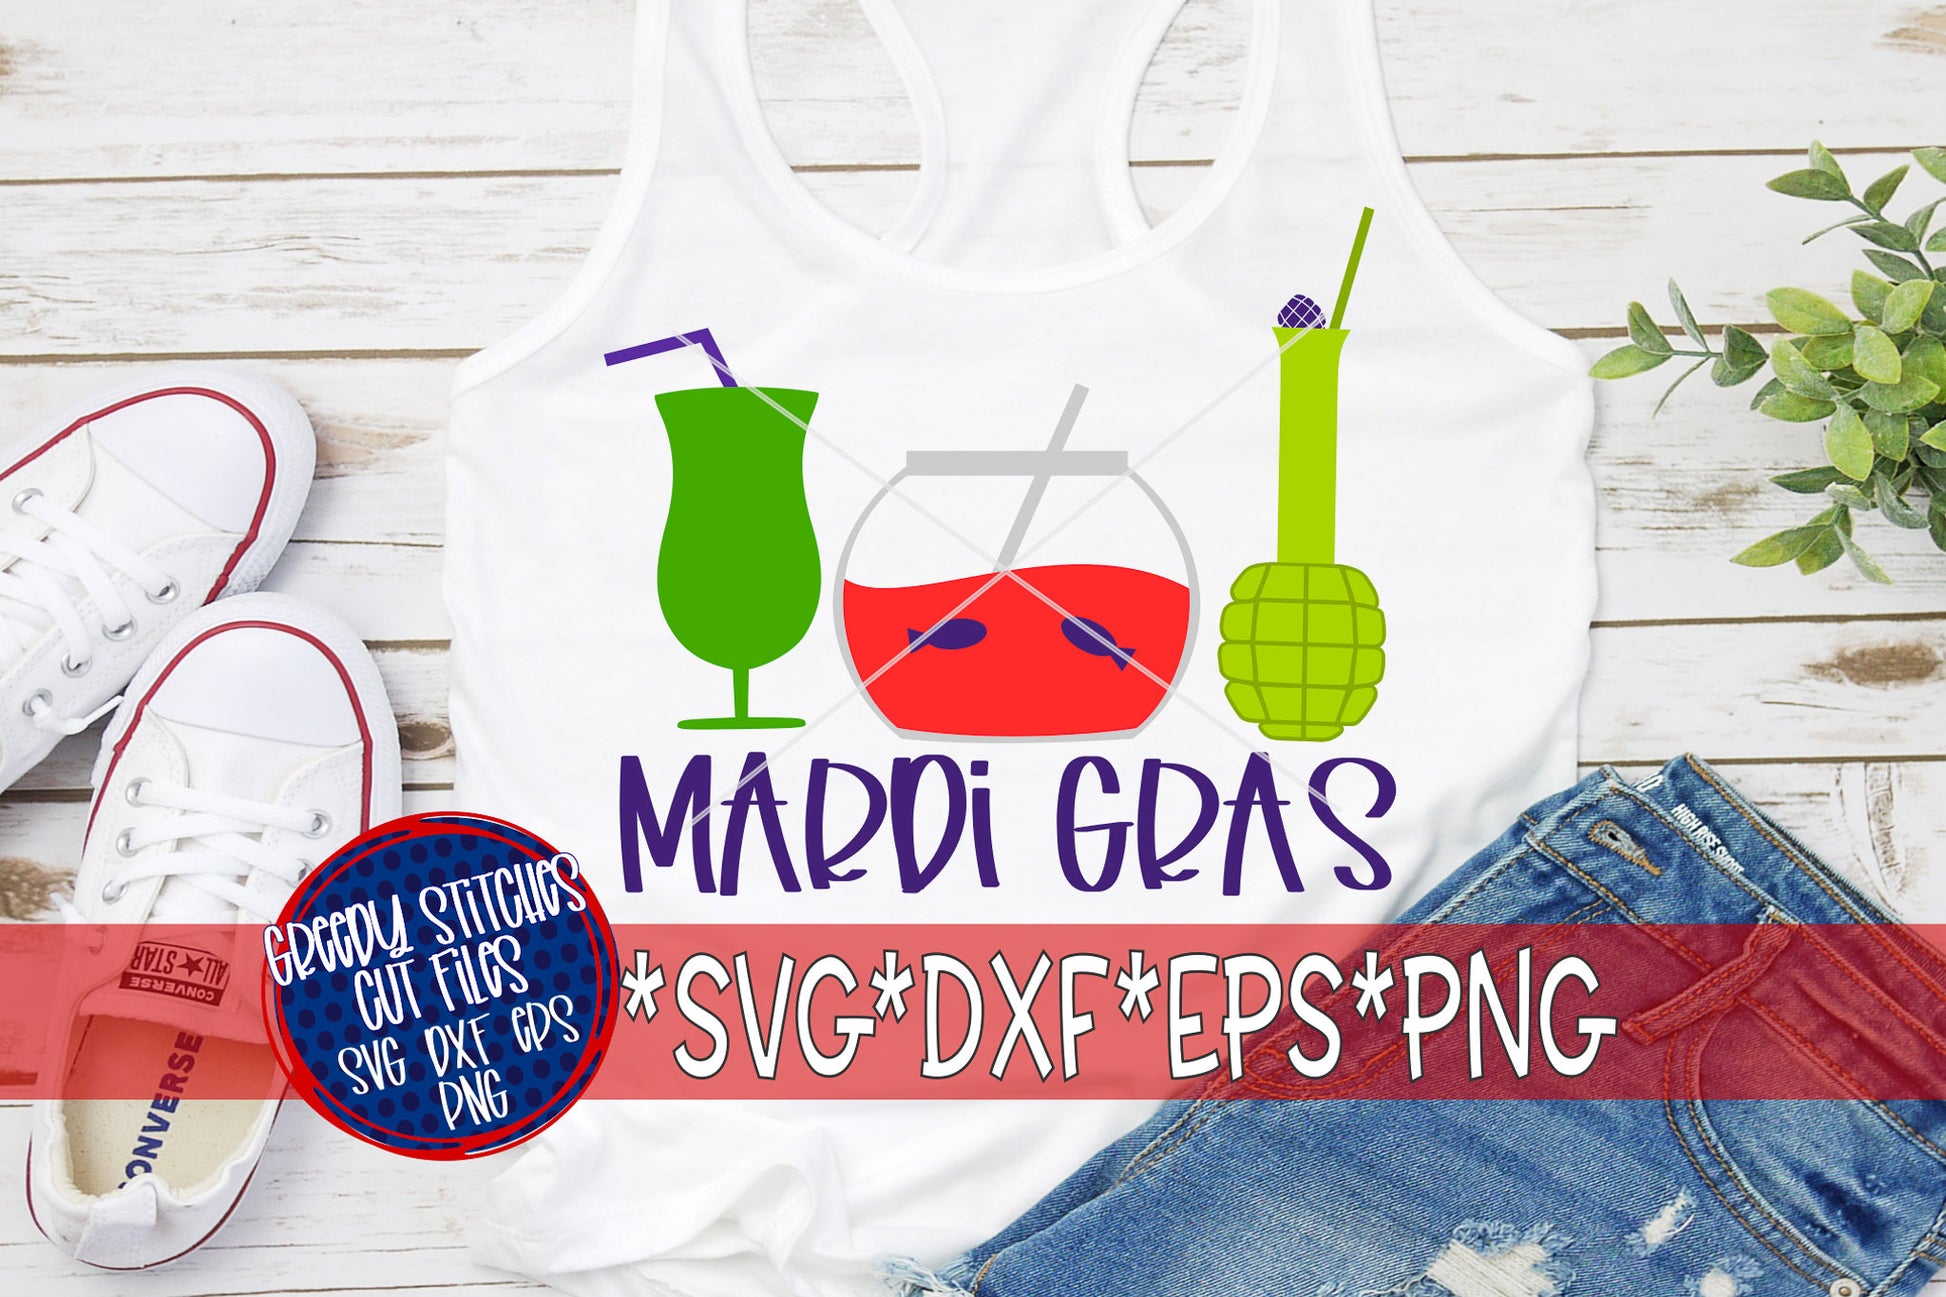 Mardi Gras Drinks svg, dxf, eps, png.  Mardi Gras SvG | Beads SVG | Mardi Gras | Hand Grenade SvG | Fishbowl SvG | Instant Download Cut File